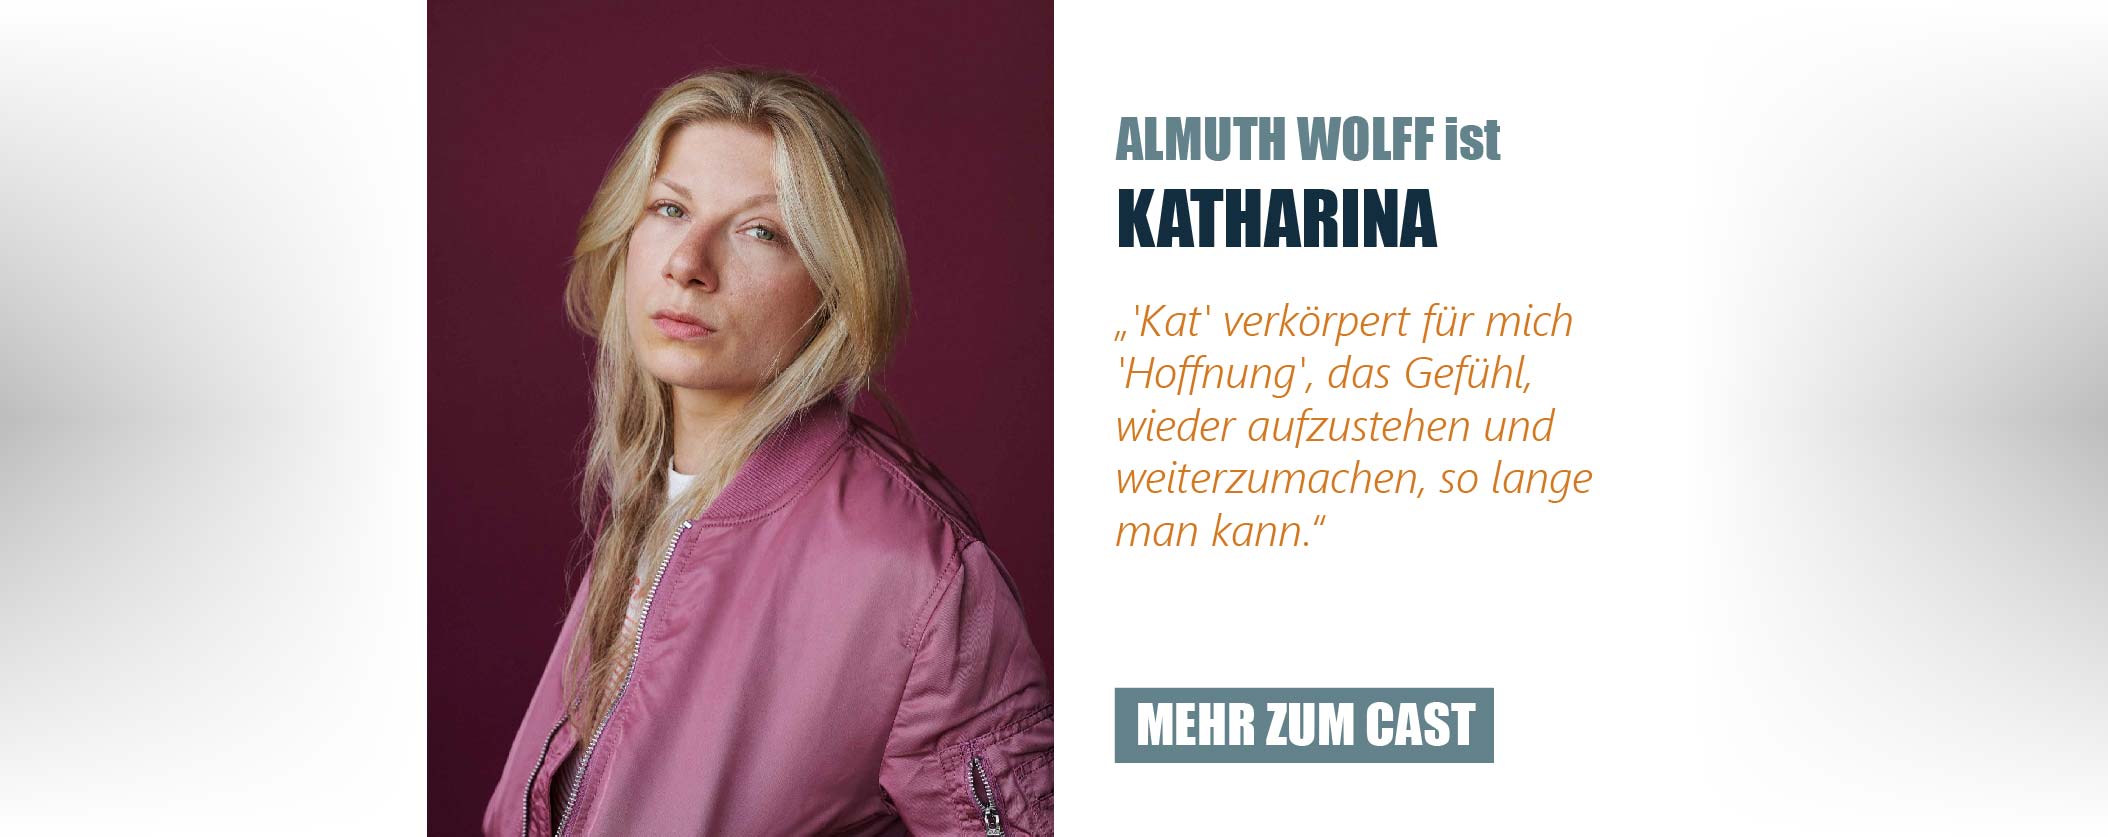 Die Schauspielerin Almuth Wolff ist Katharina